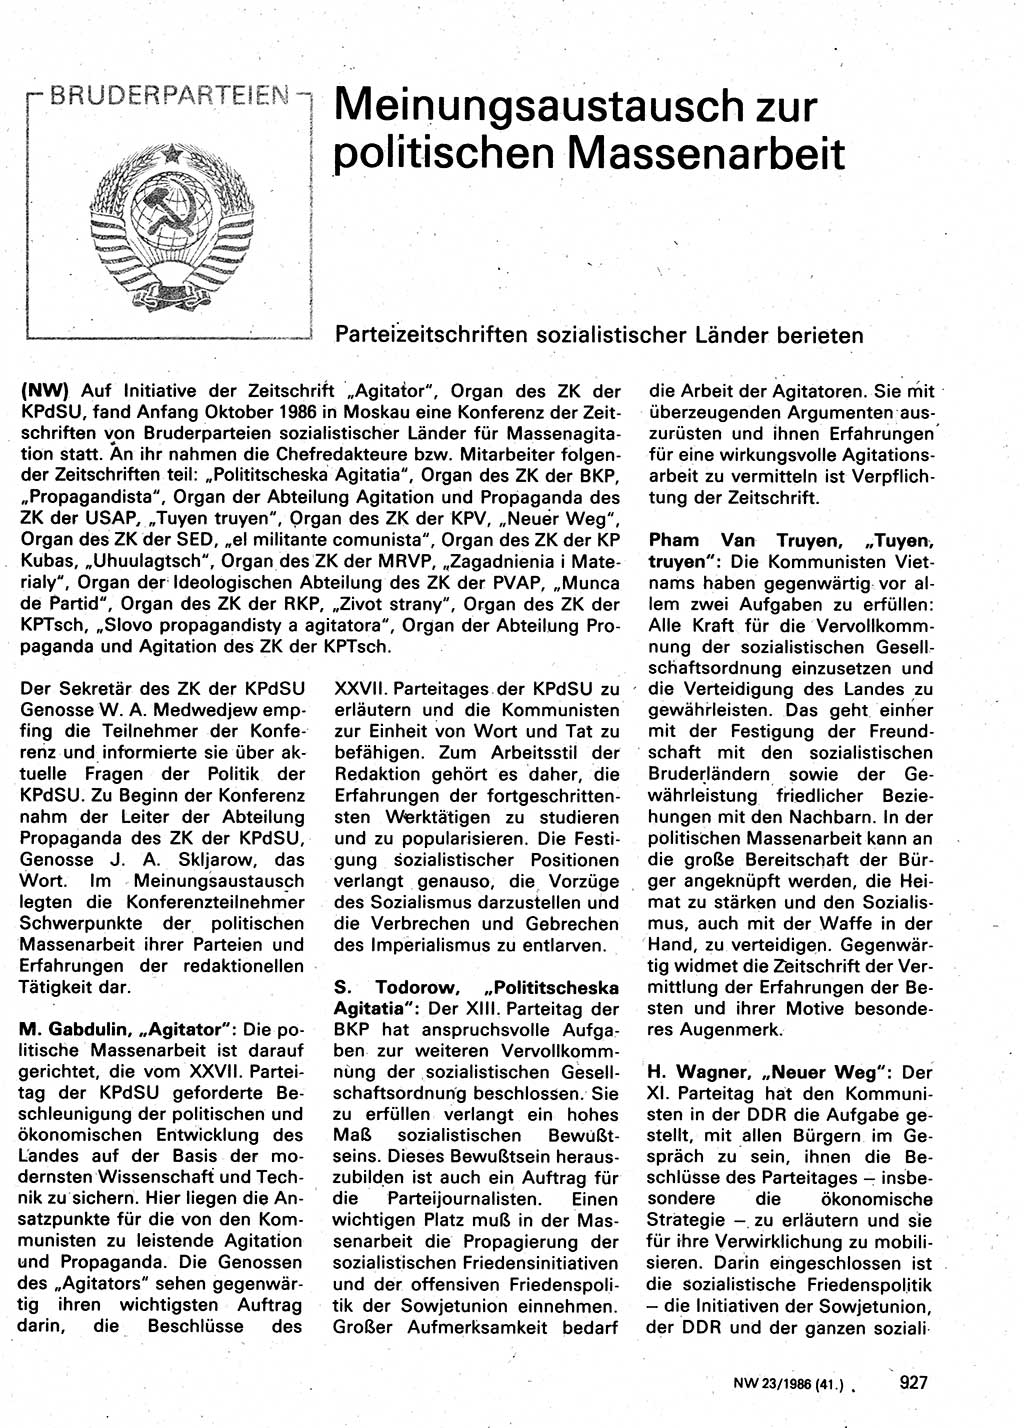 Neuer Weg (NW), Organ des Zentralkomitees (ZK) der SED (Sozialistische Einheitspartei Deutschlands) für Fragen des Parteilebens, 41. Jahrgang [Deutsche Demokratische Republik (DDR)] 1986, Seite 927 (NW ZK SED DDR 1986, S. 927)